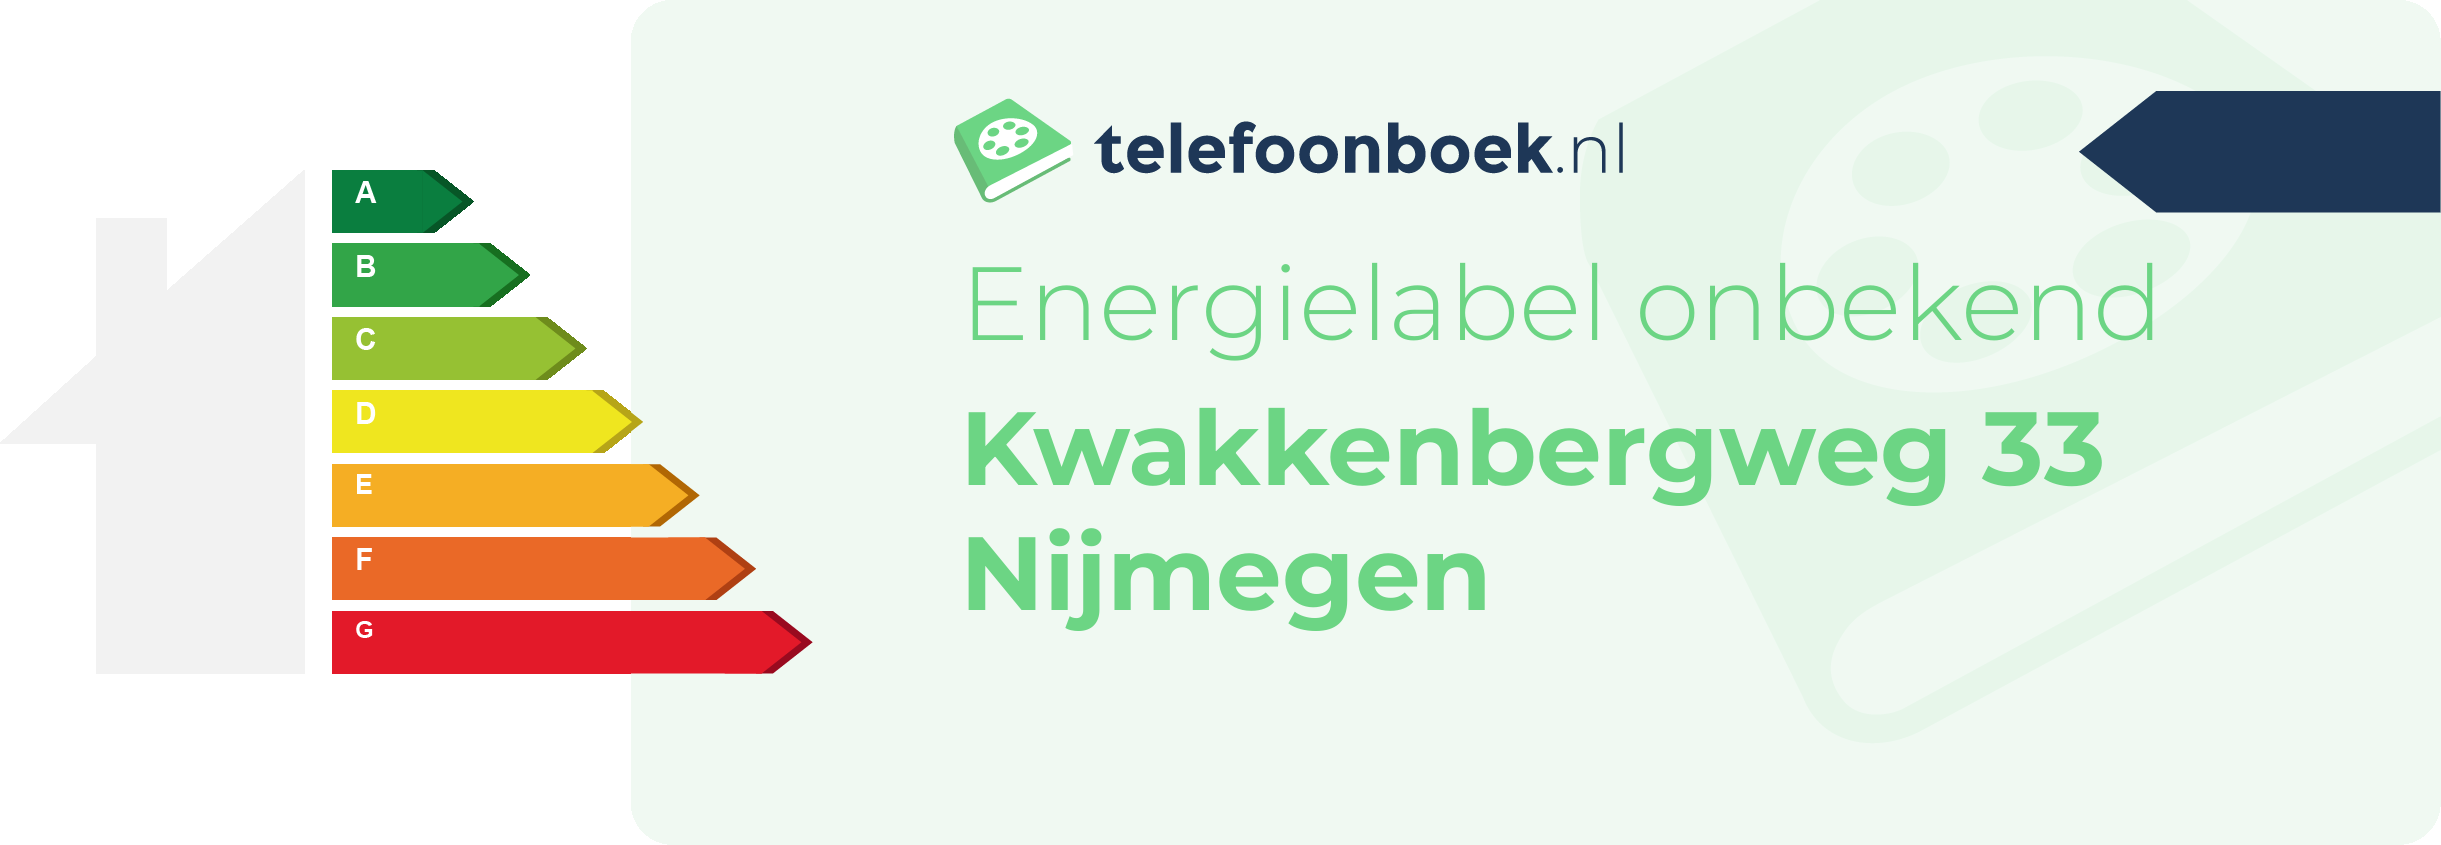 Energielabel Kwakkenbergweg 33 Nijmegen